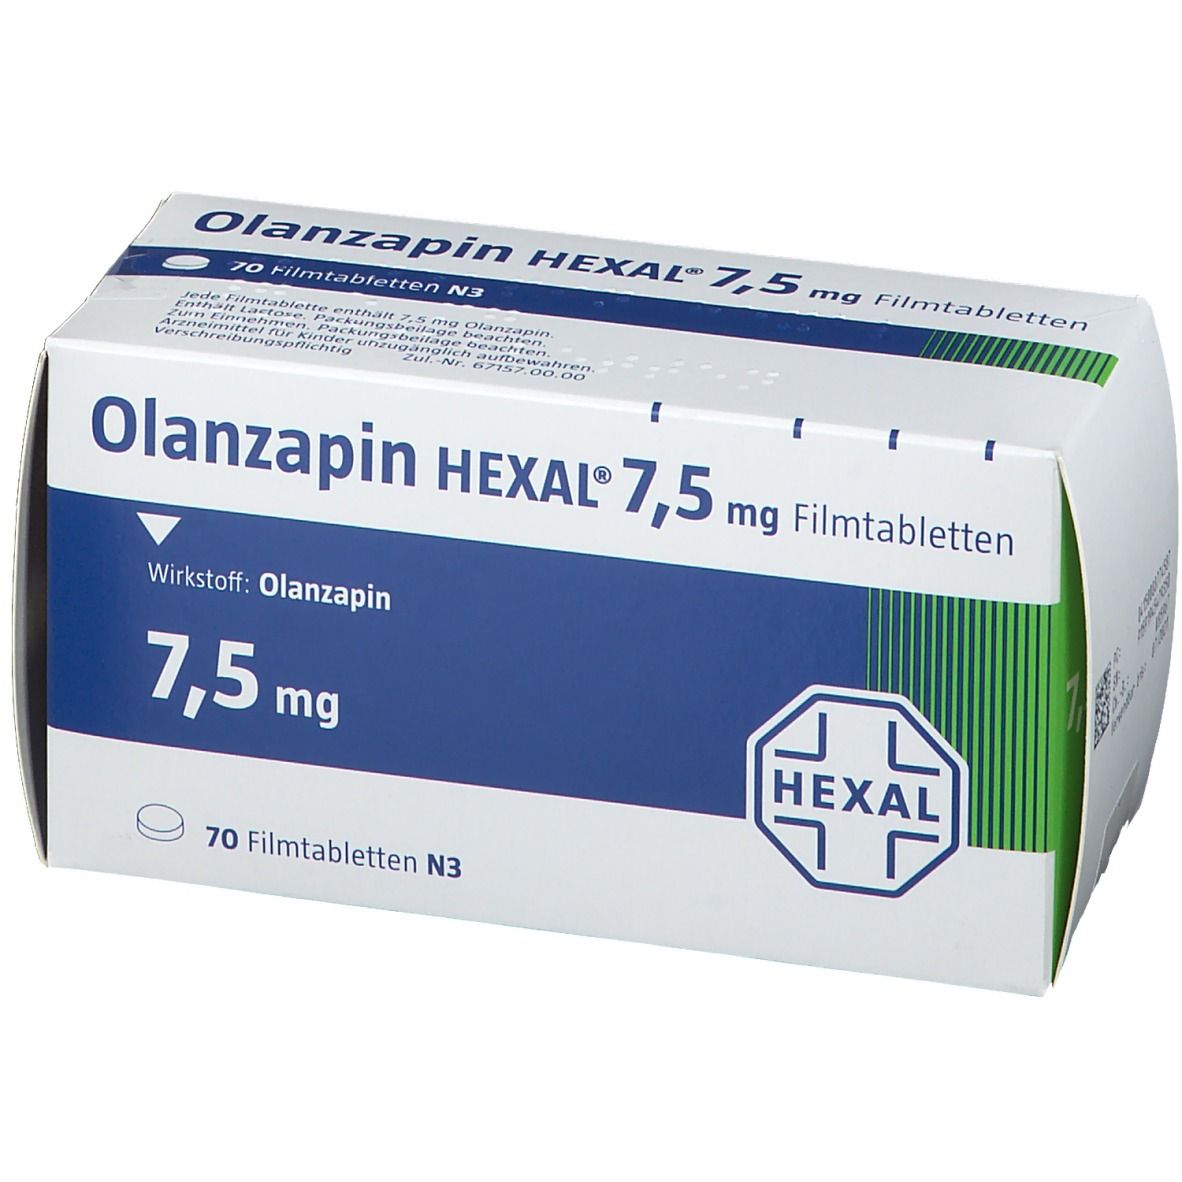 Olanzapin HEXAL® 7,5 mg